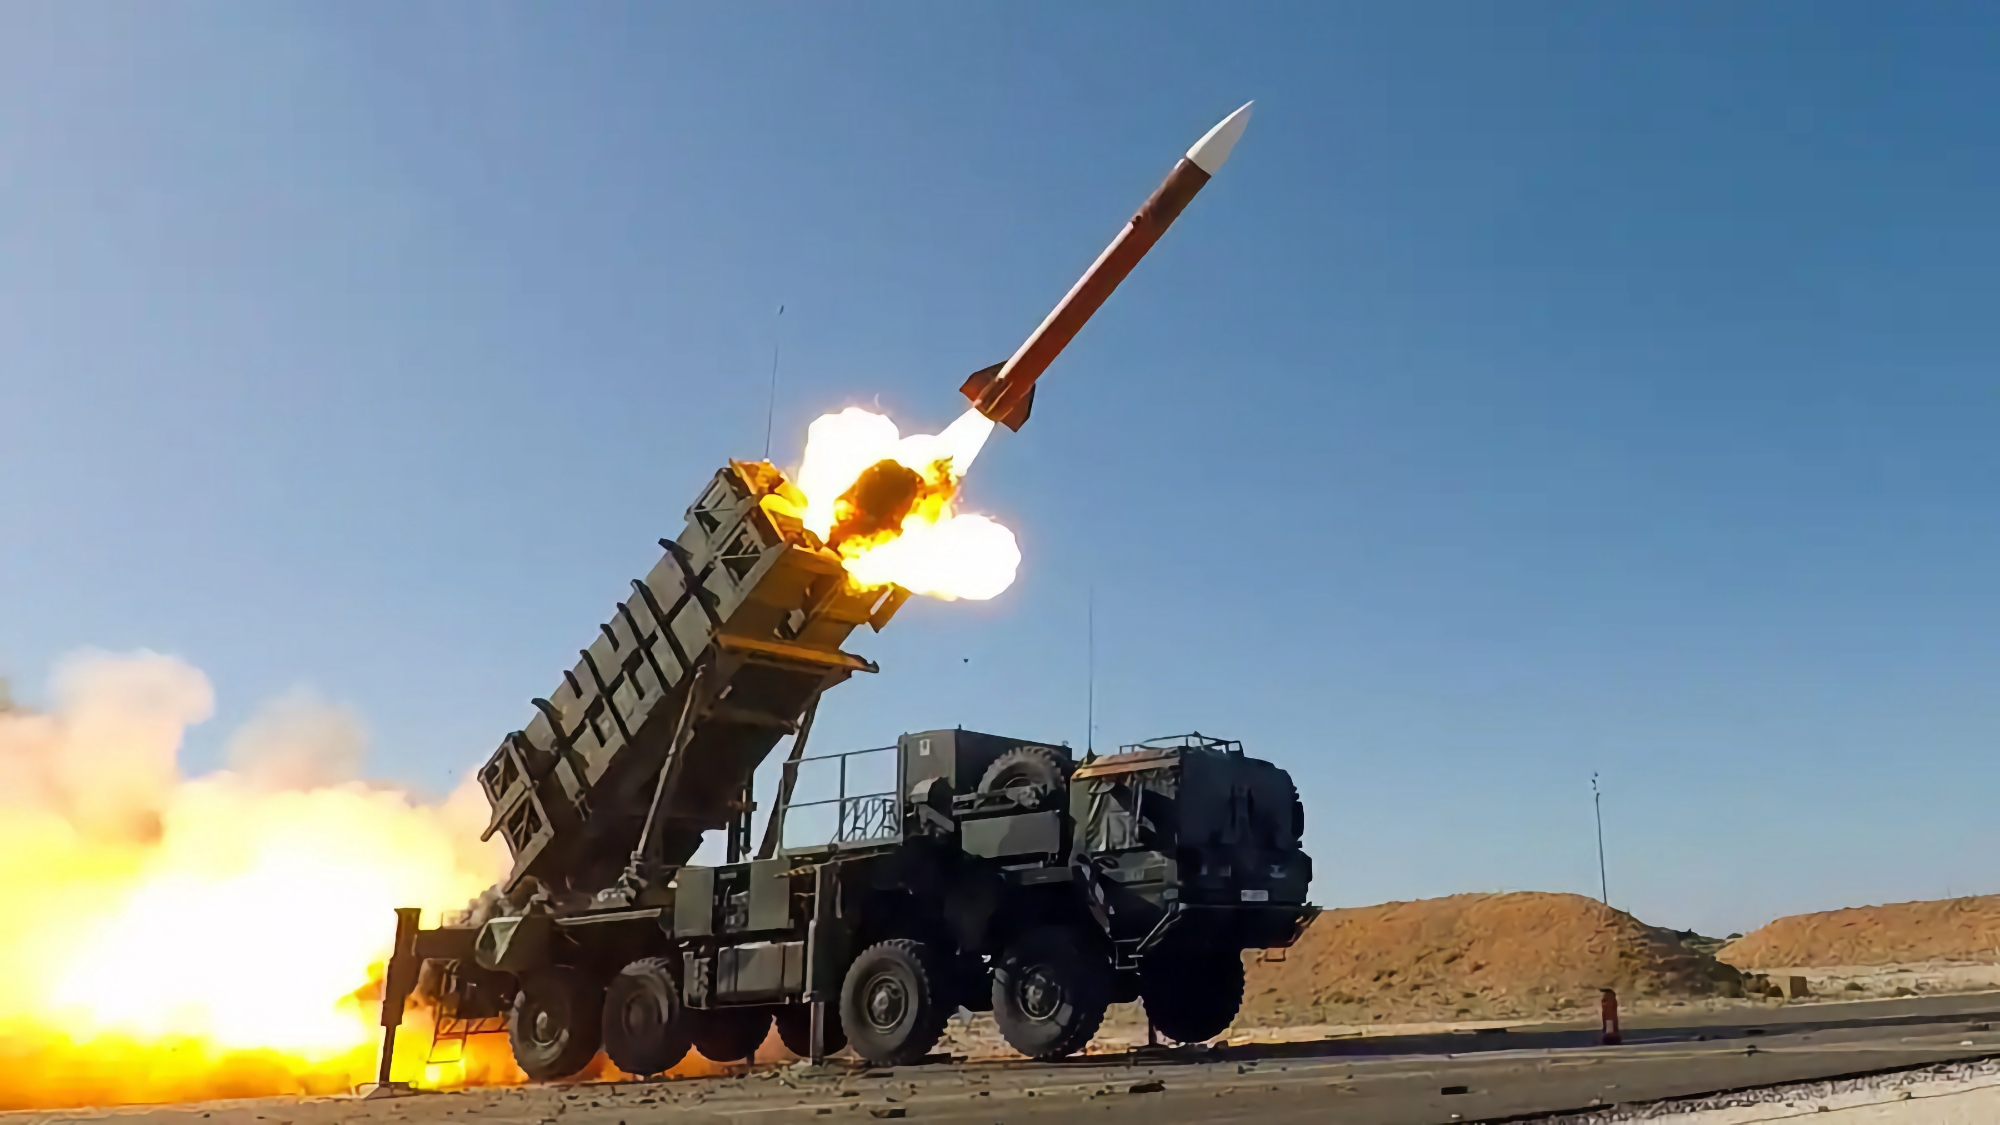 ЗРК Patriot, ракеты для HIMARS, бронемашины Cougar MRAP, HMMWV и авиационные боеприпасы JDAM: США объявили самый большой пакет военной помощи для Укр